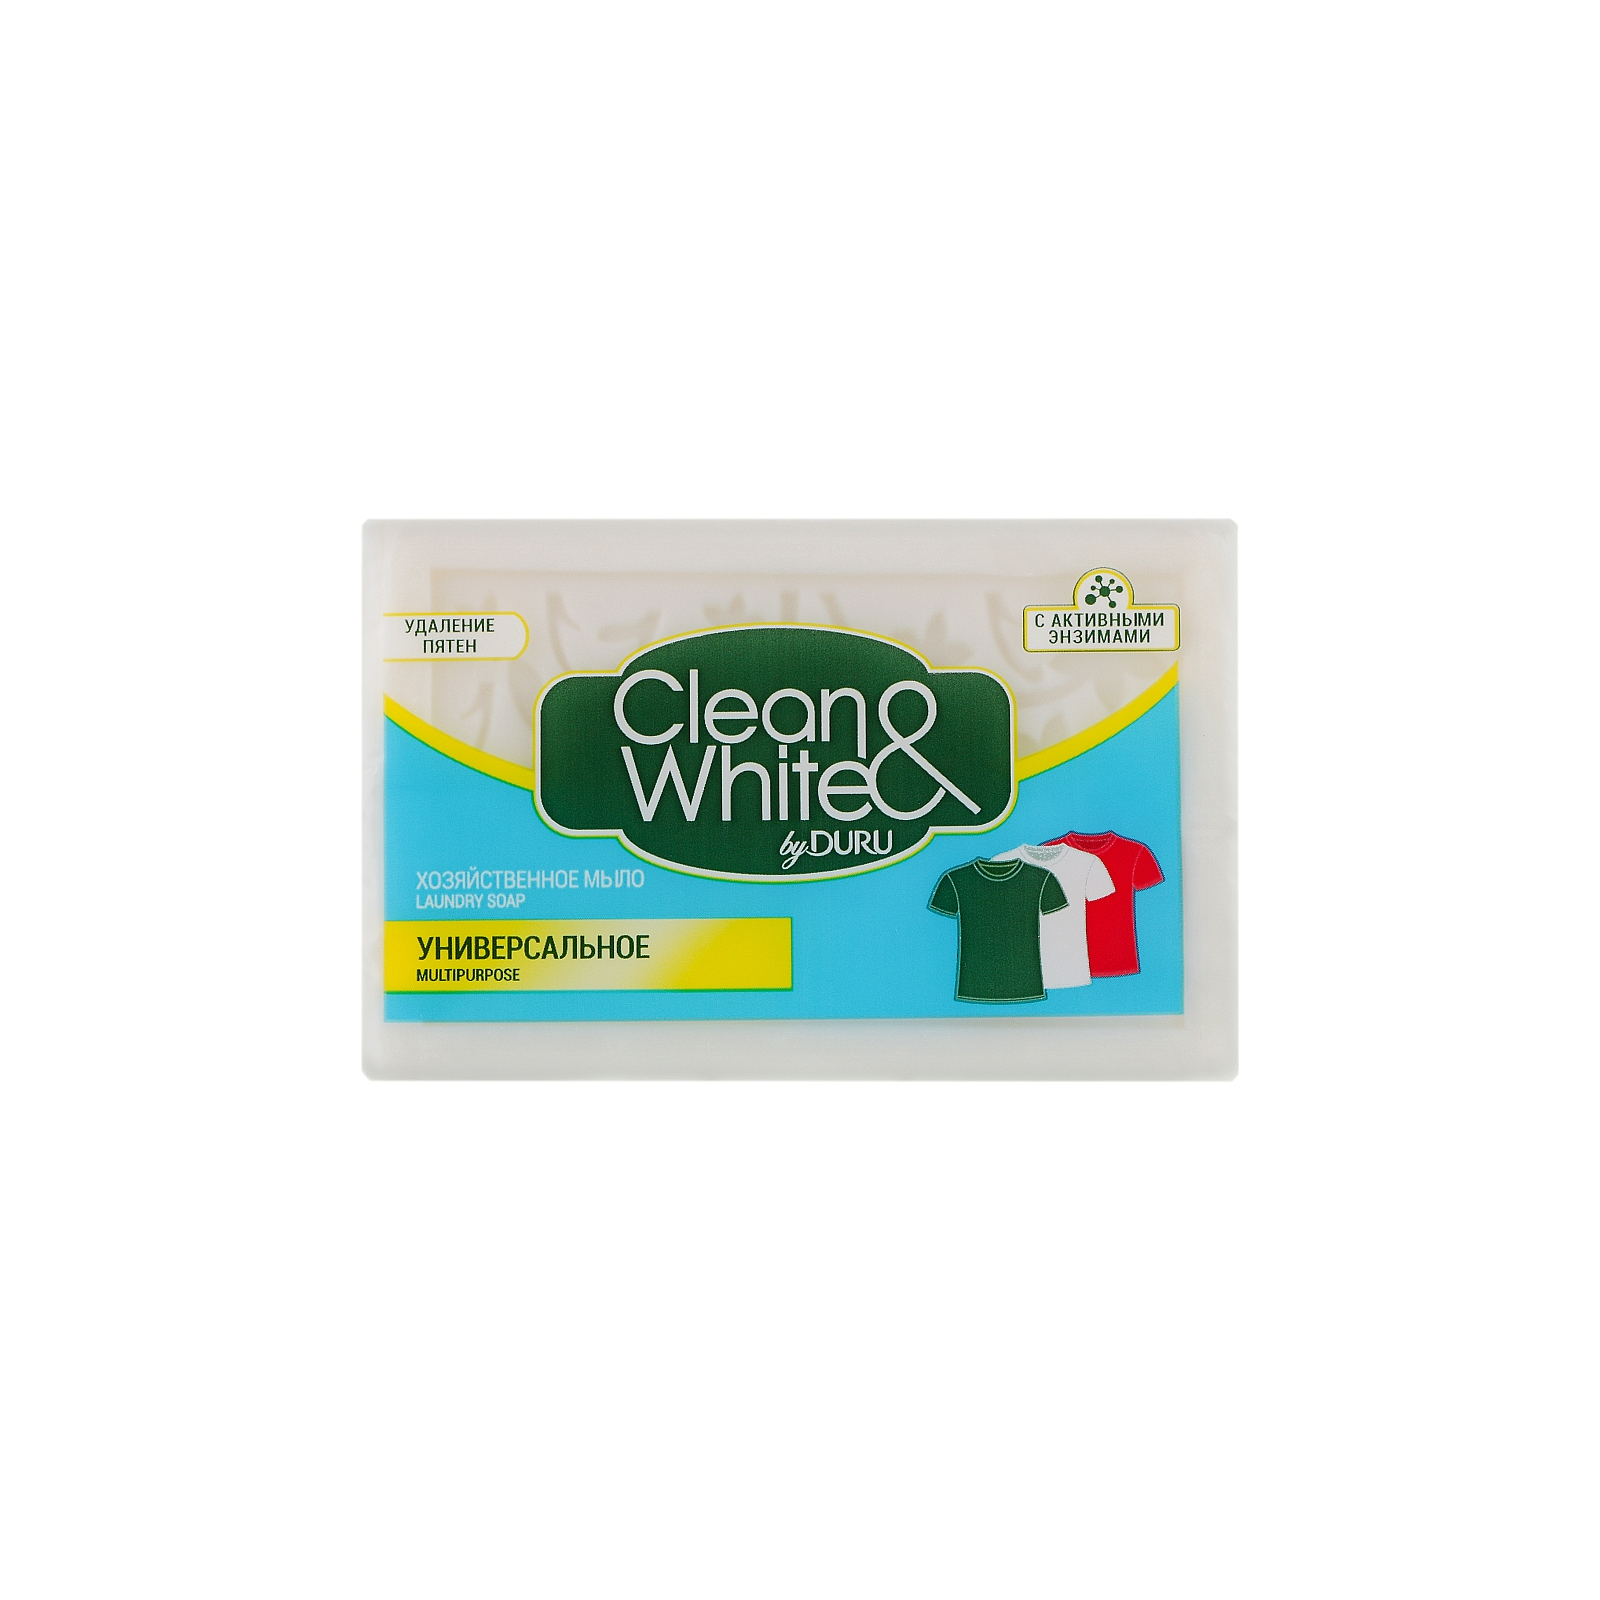 Мыло для стирки Duru Clean&White Хозяйственное Универсальное 2 x 120 г (8690506521875)